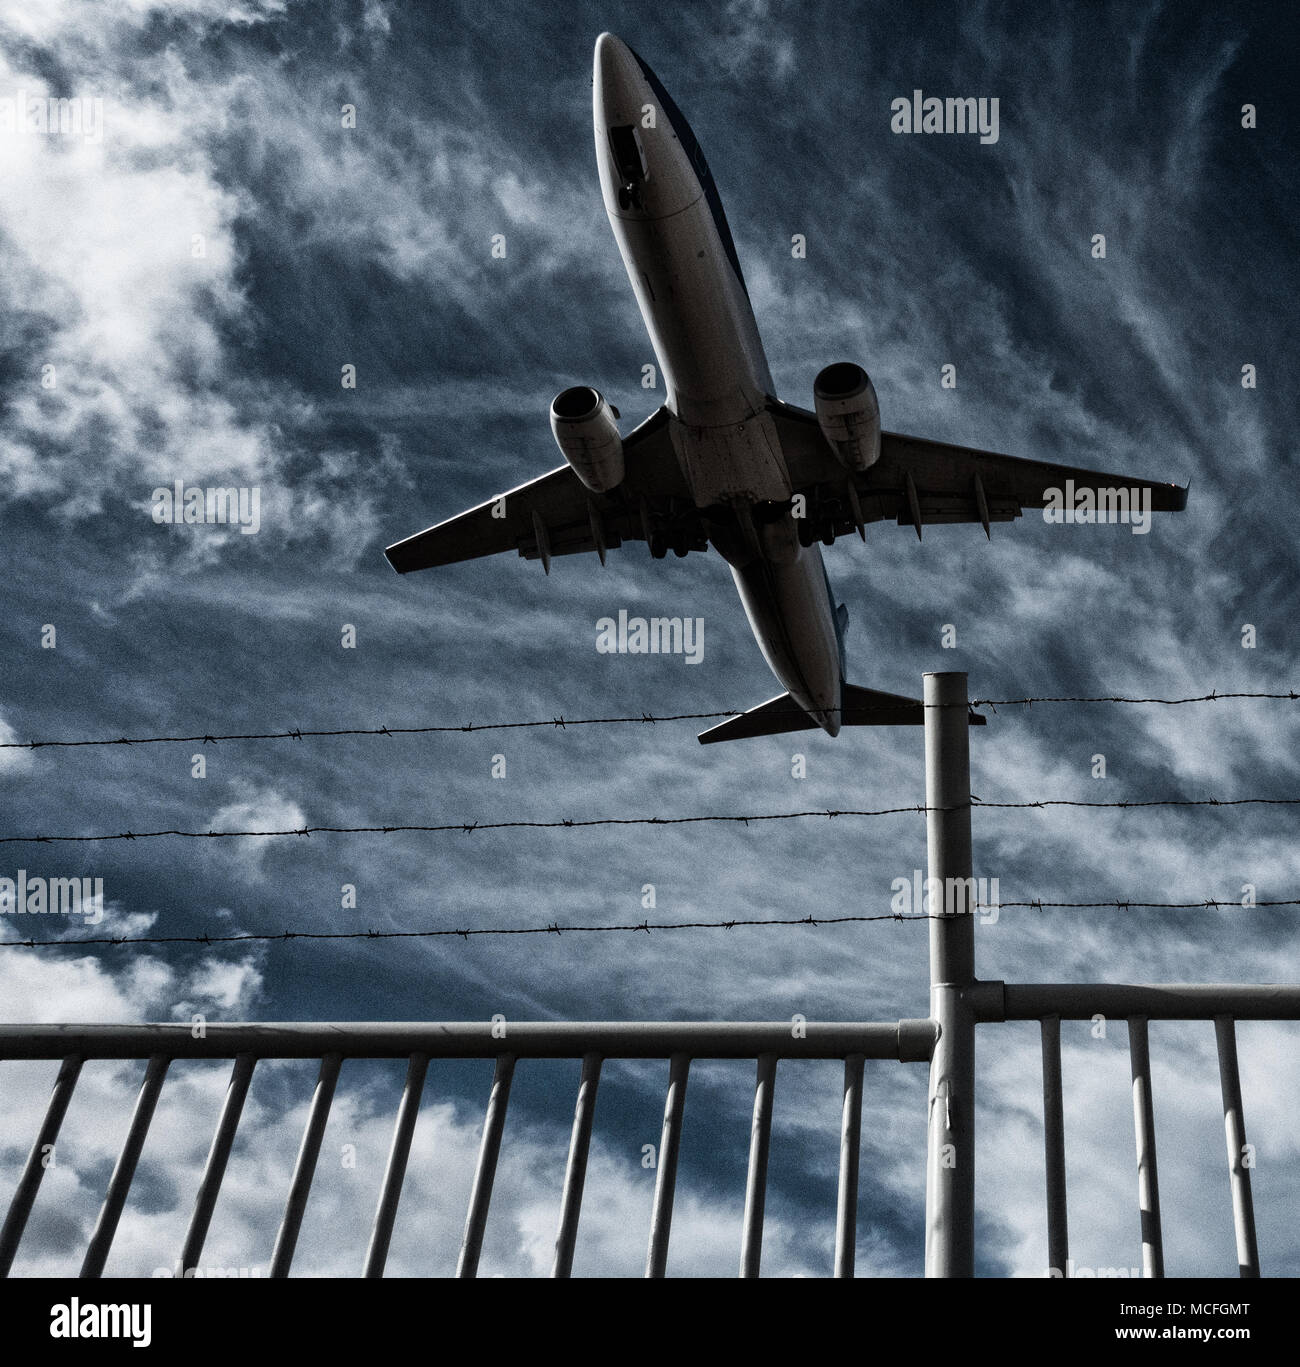 Niedrig fliegende Flugzeuge/Flugzeuge fliegen über Stacheldrahtzaun. Konzeptbild: Keine Flugzone, Ukraine-Russland-Konflikt, Krieg Stockfoto